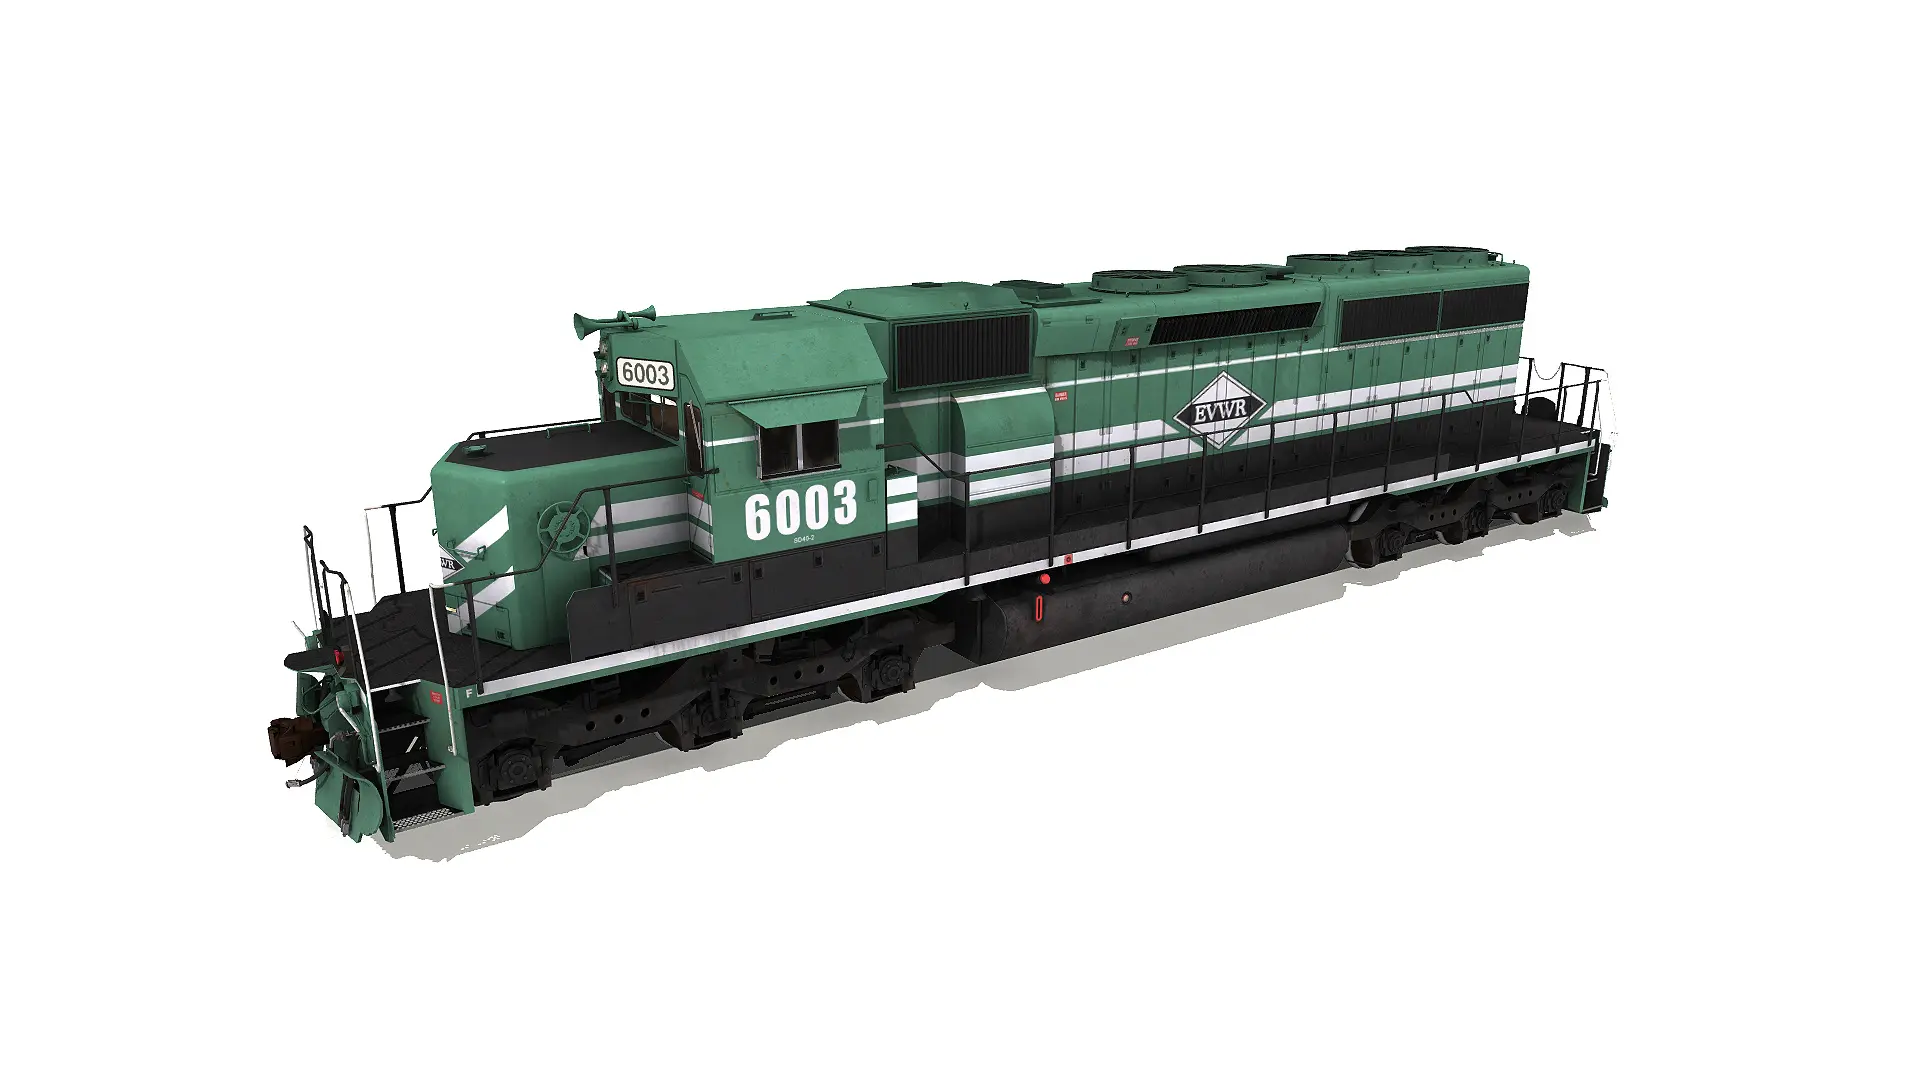 Green evwr sd, a rail engine